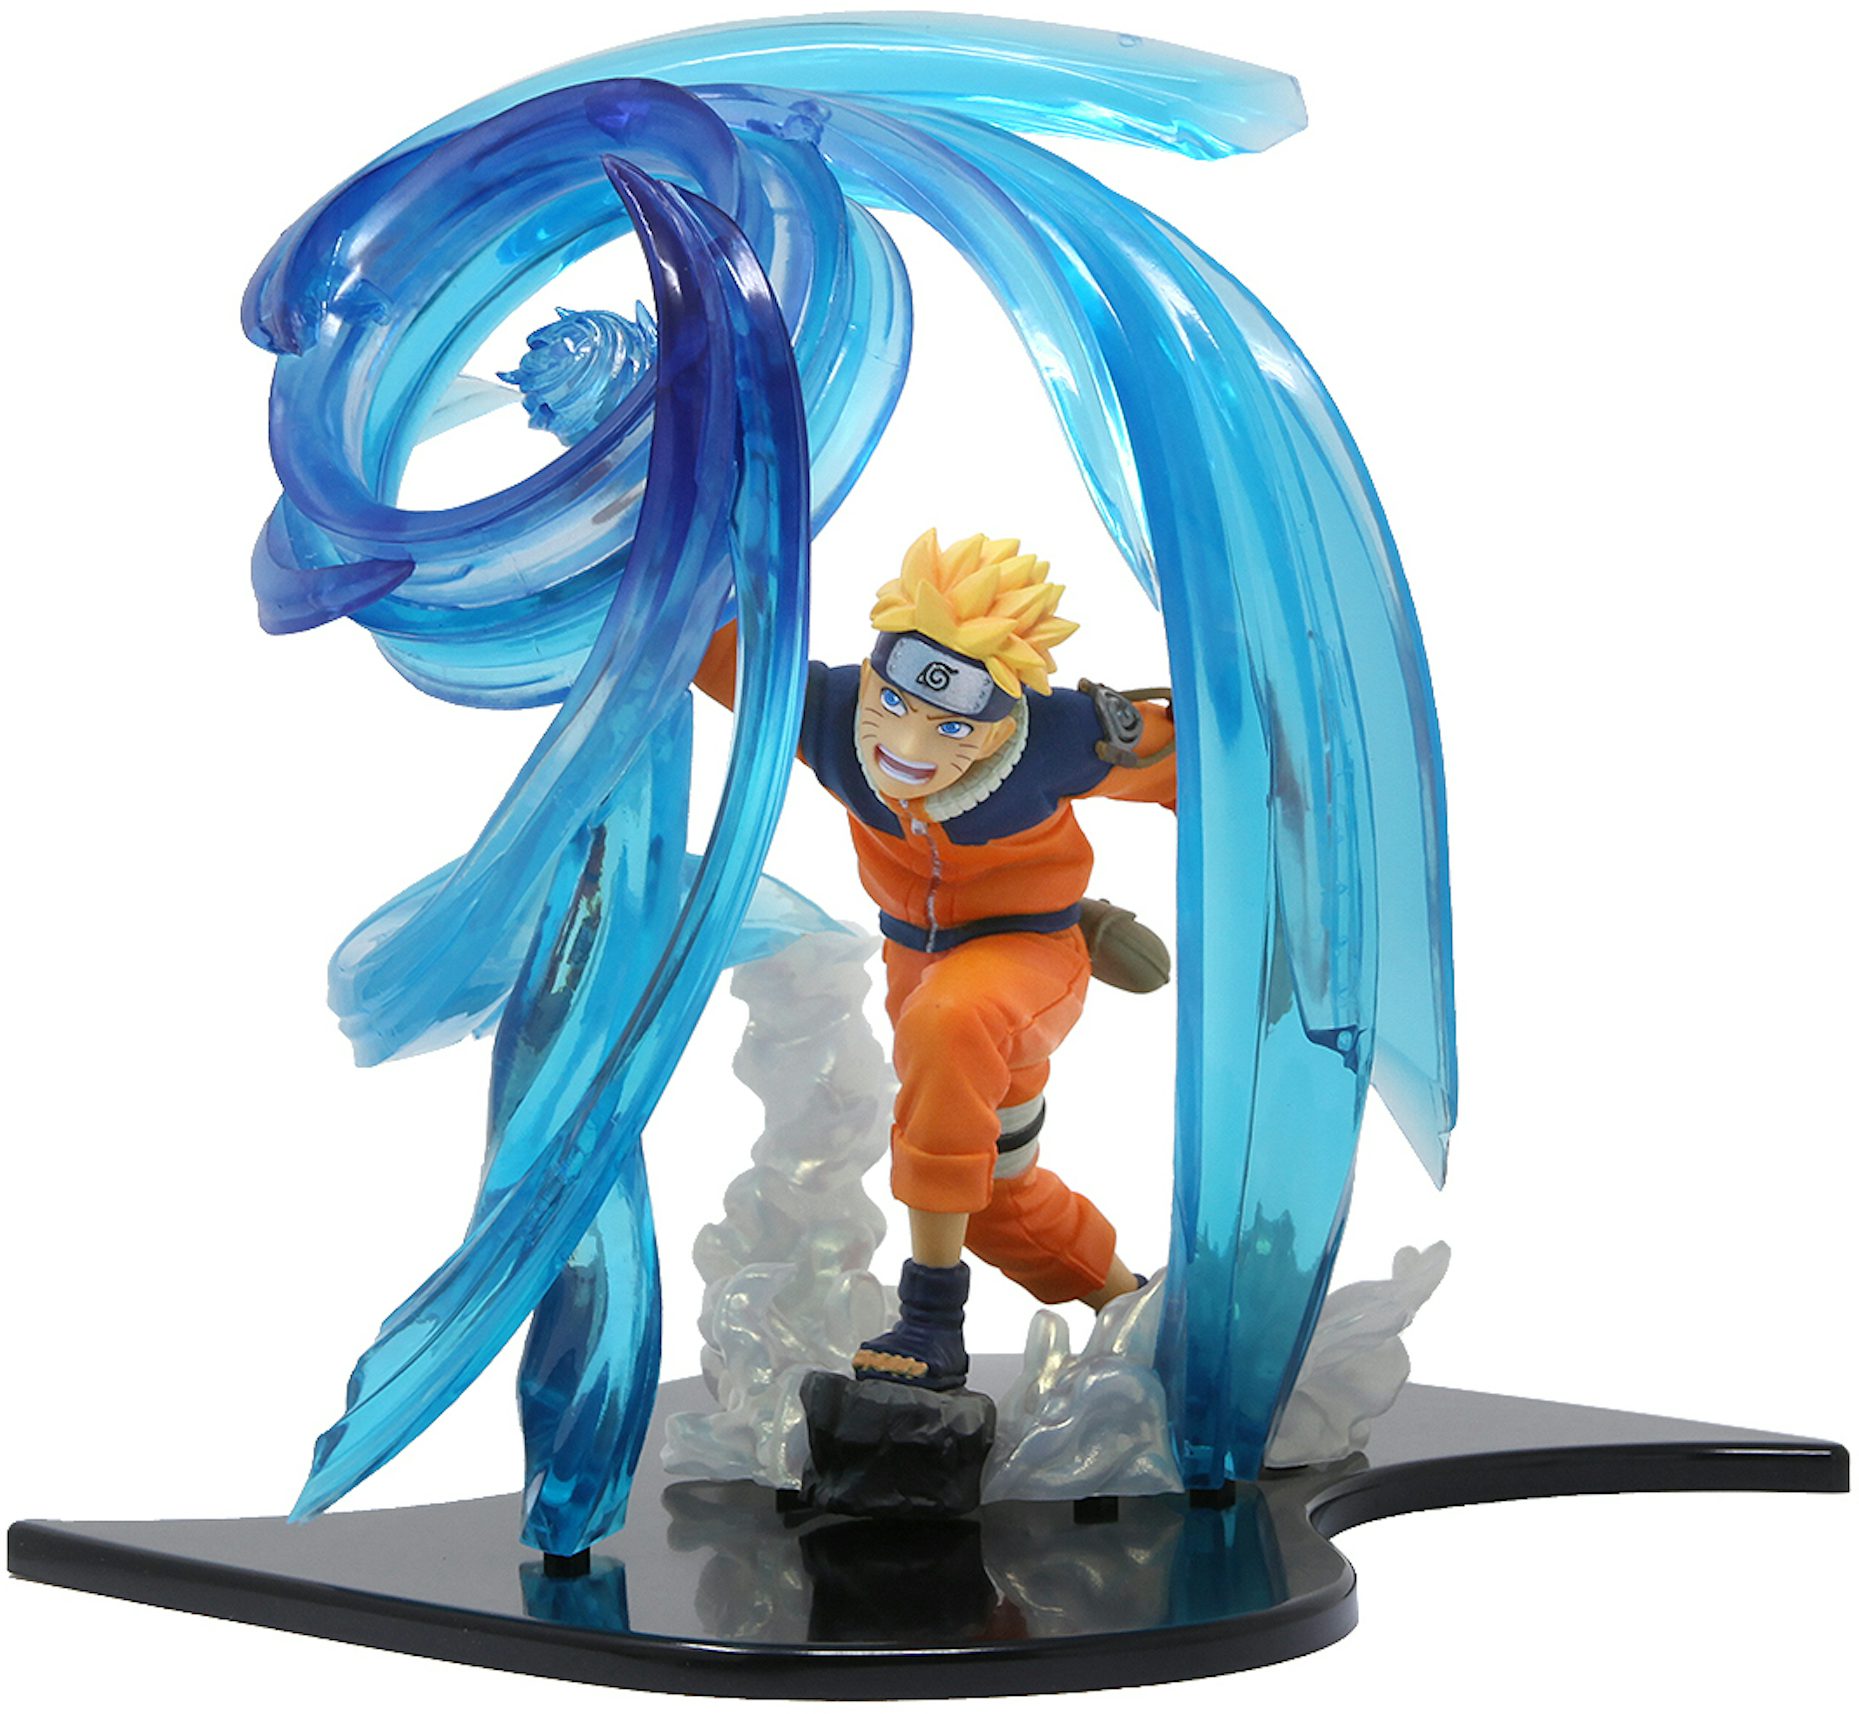 Naruto Shippuden new toy company idea